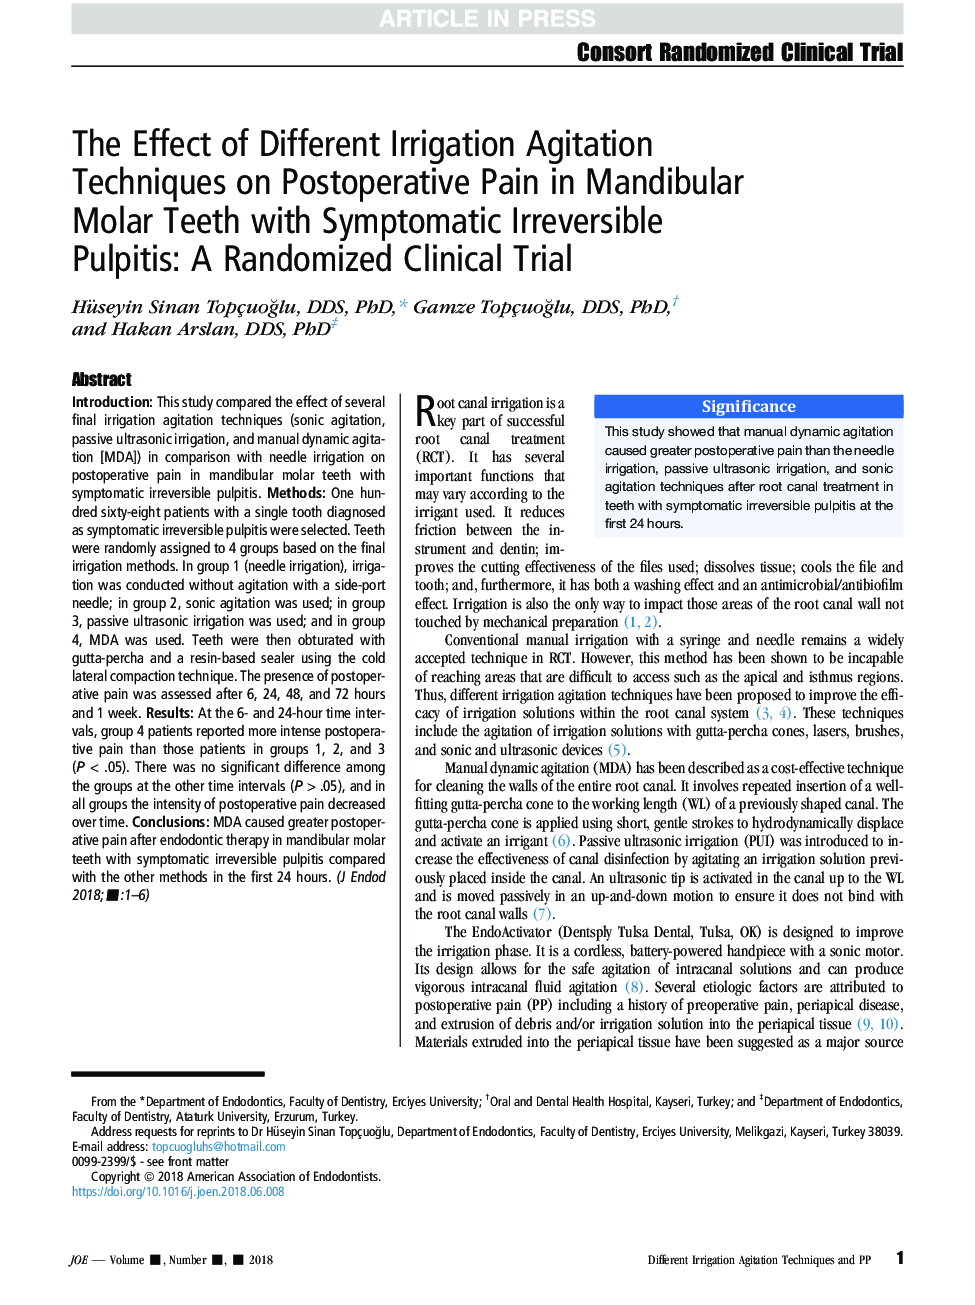 تأثیر روشهای مختلف تحریک آبیاری بر درد پس از عمل در دندانهای مایع ماندوبول با پالپییت غیر قابل برگشت قابل علاج: یک مطالعه بالینی تصادفی شده